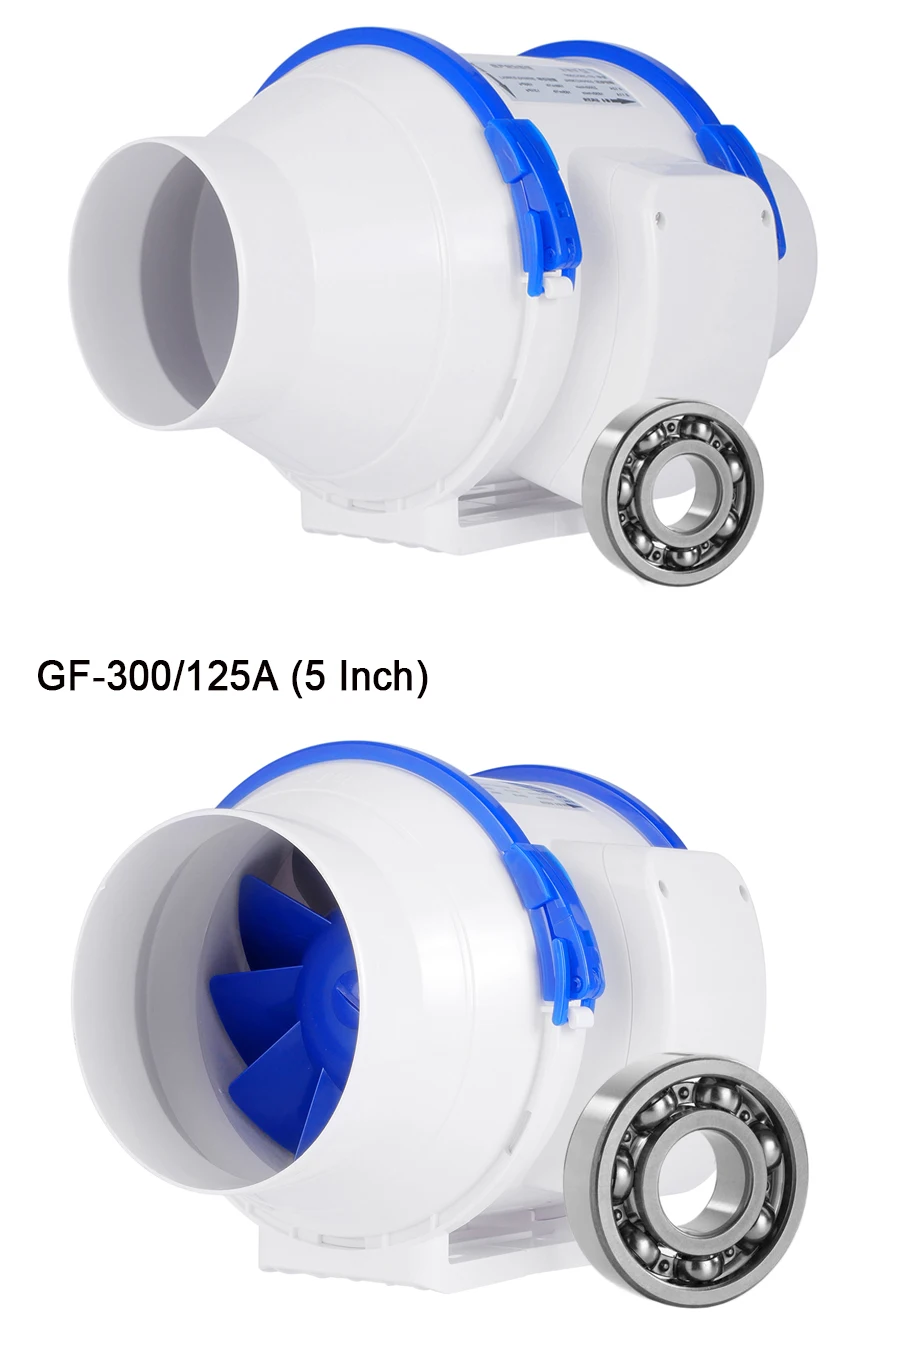 Hon& Guan 110V встроенные вентиляторы, 6 ''(ø150mm) Встроенный воздуховод вытяжной вентилятор Макс воздушный поток 530m3/ч для ванной комнаты, теплиц, гидропоники